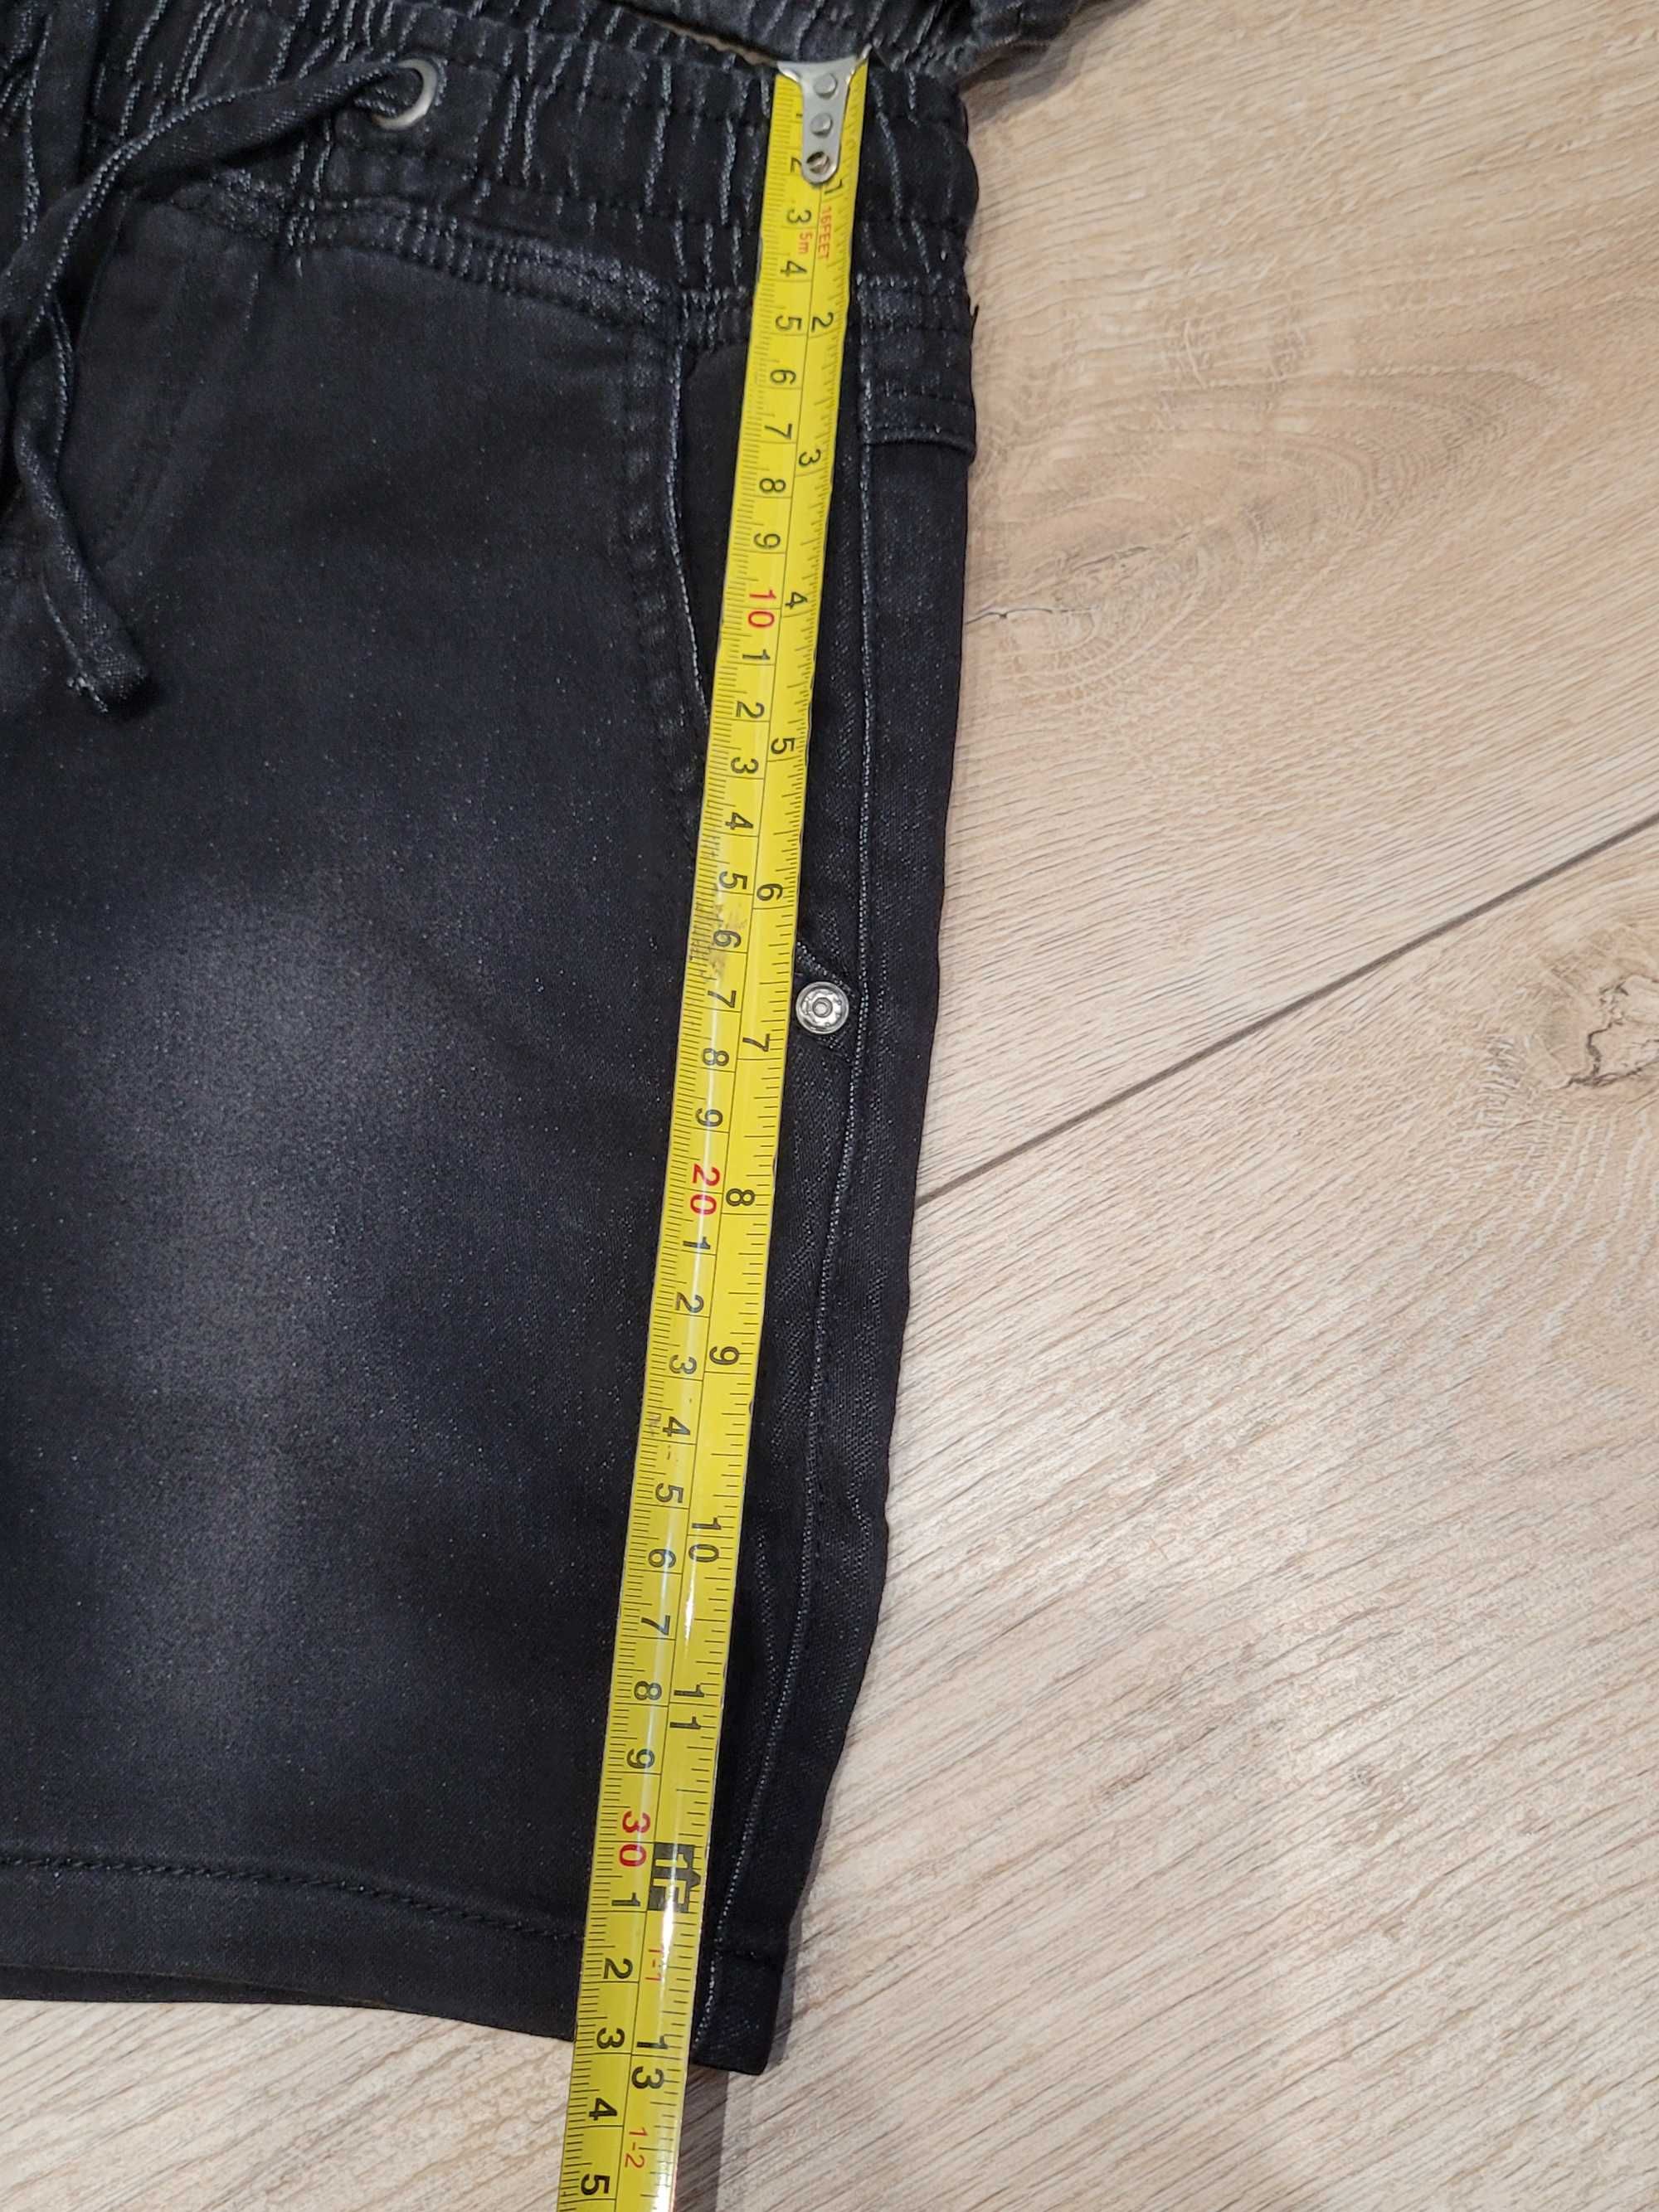 128 Nowe szorty 2 pary krótkie spodenki chłopięce jeansowe czarne Lidl